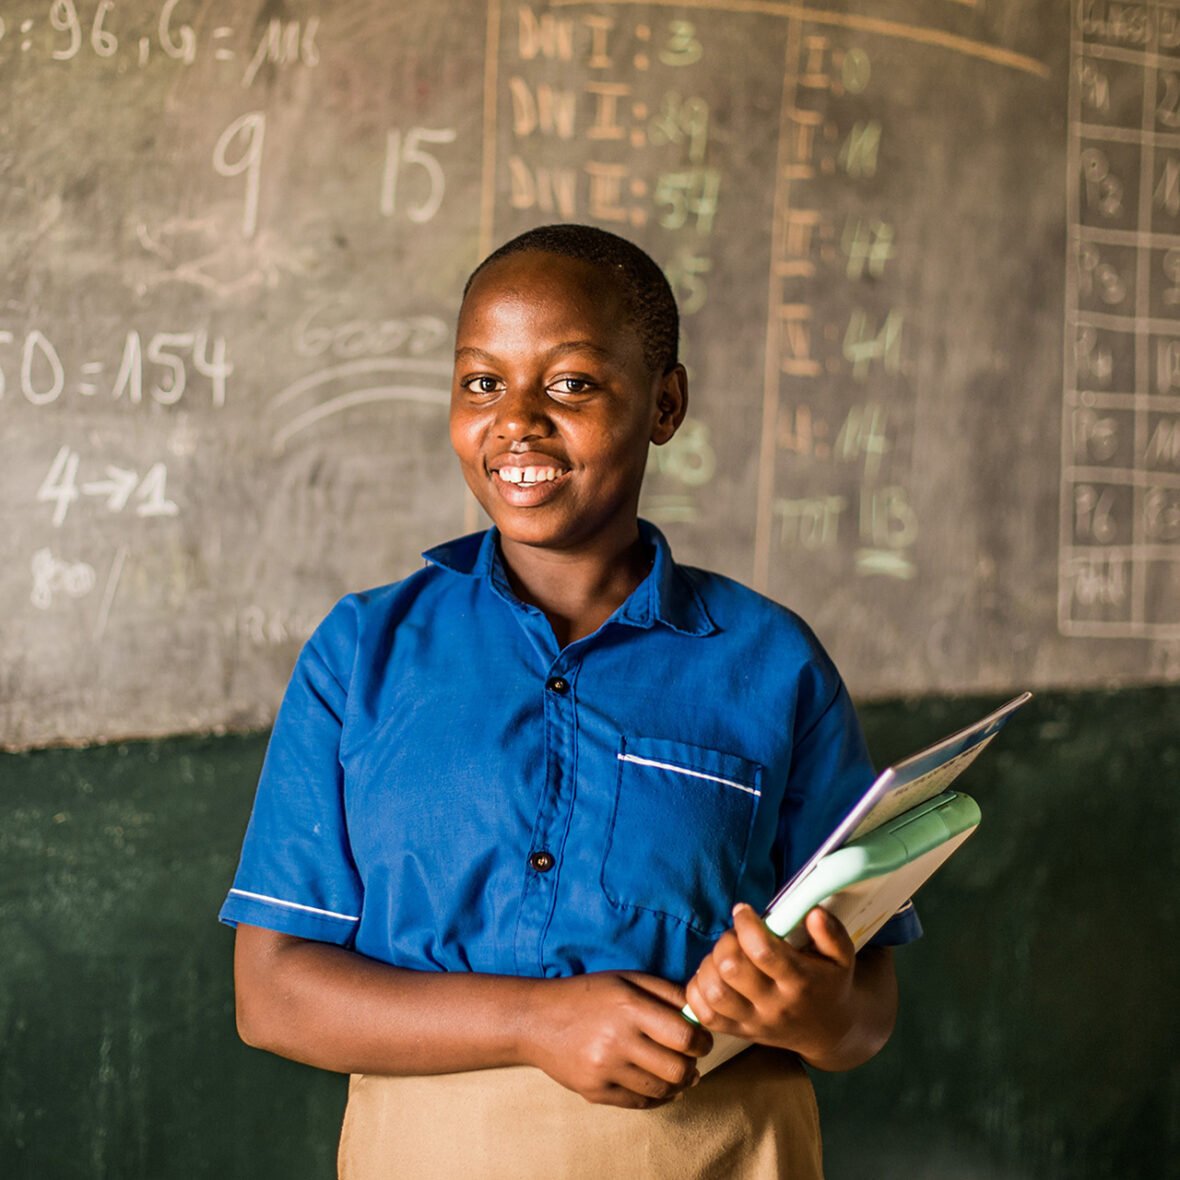 Ruandalainen Olive seisoo koululuokassa.